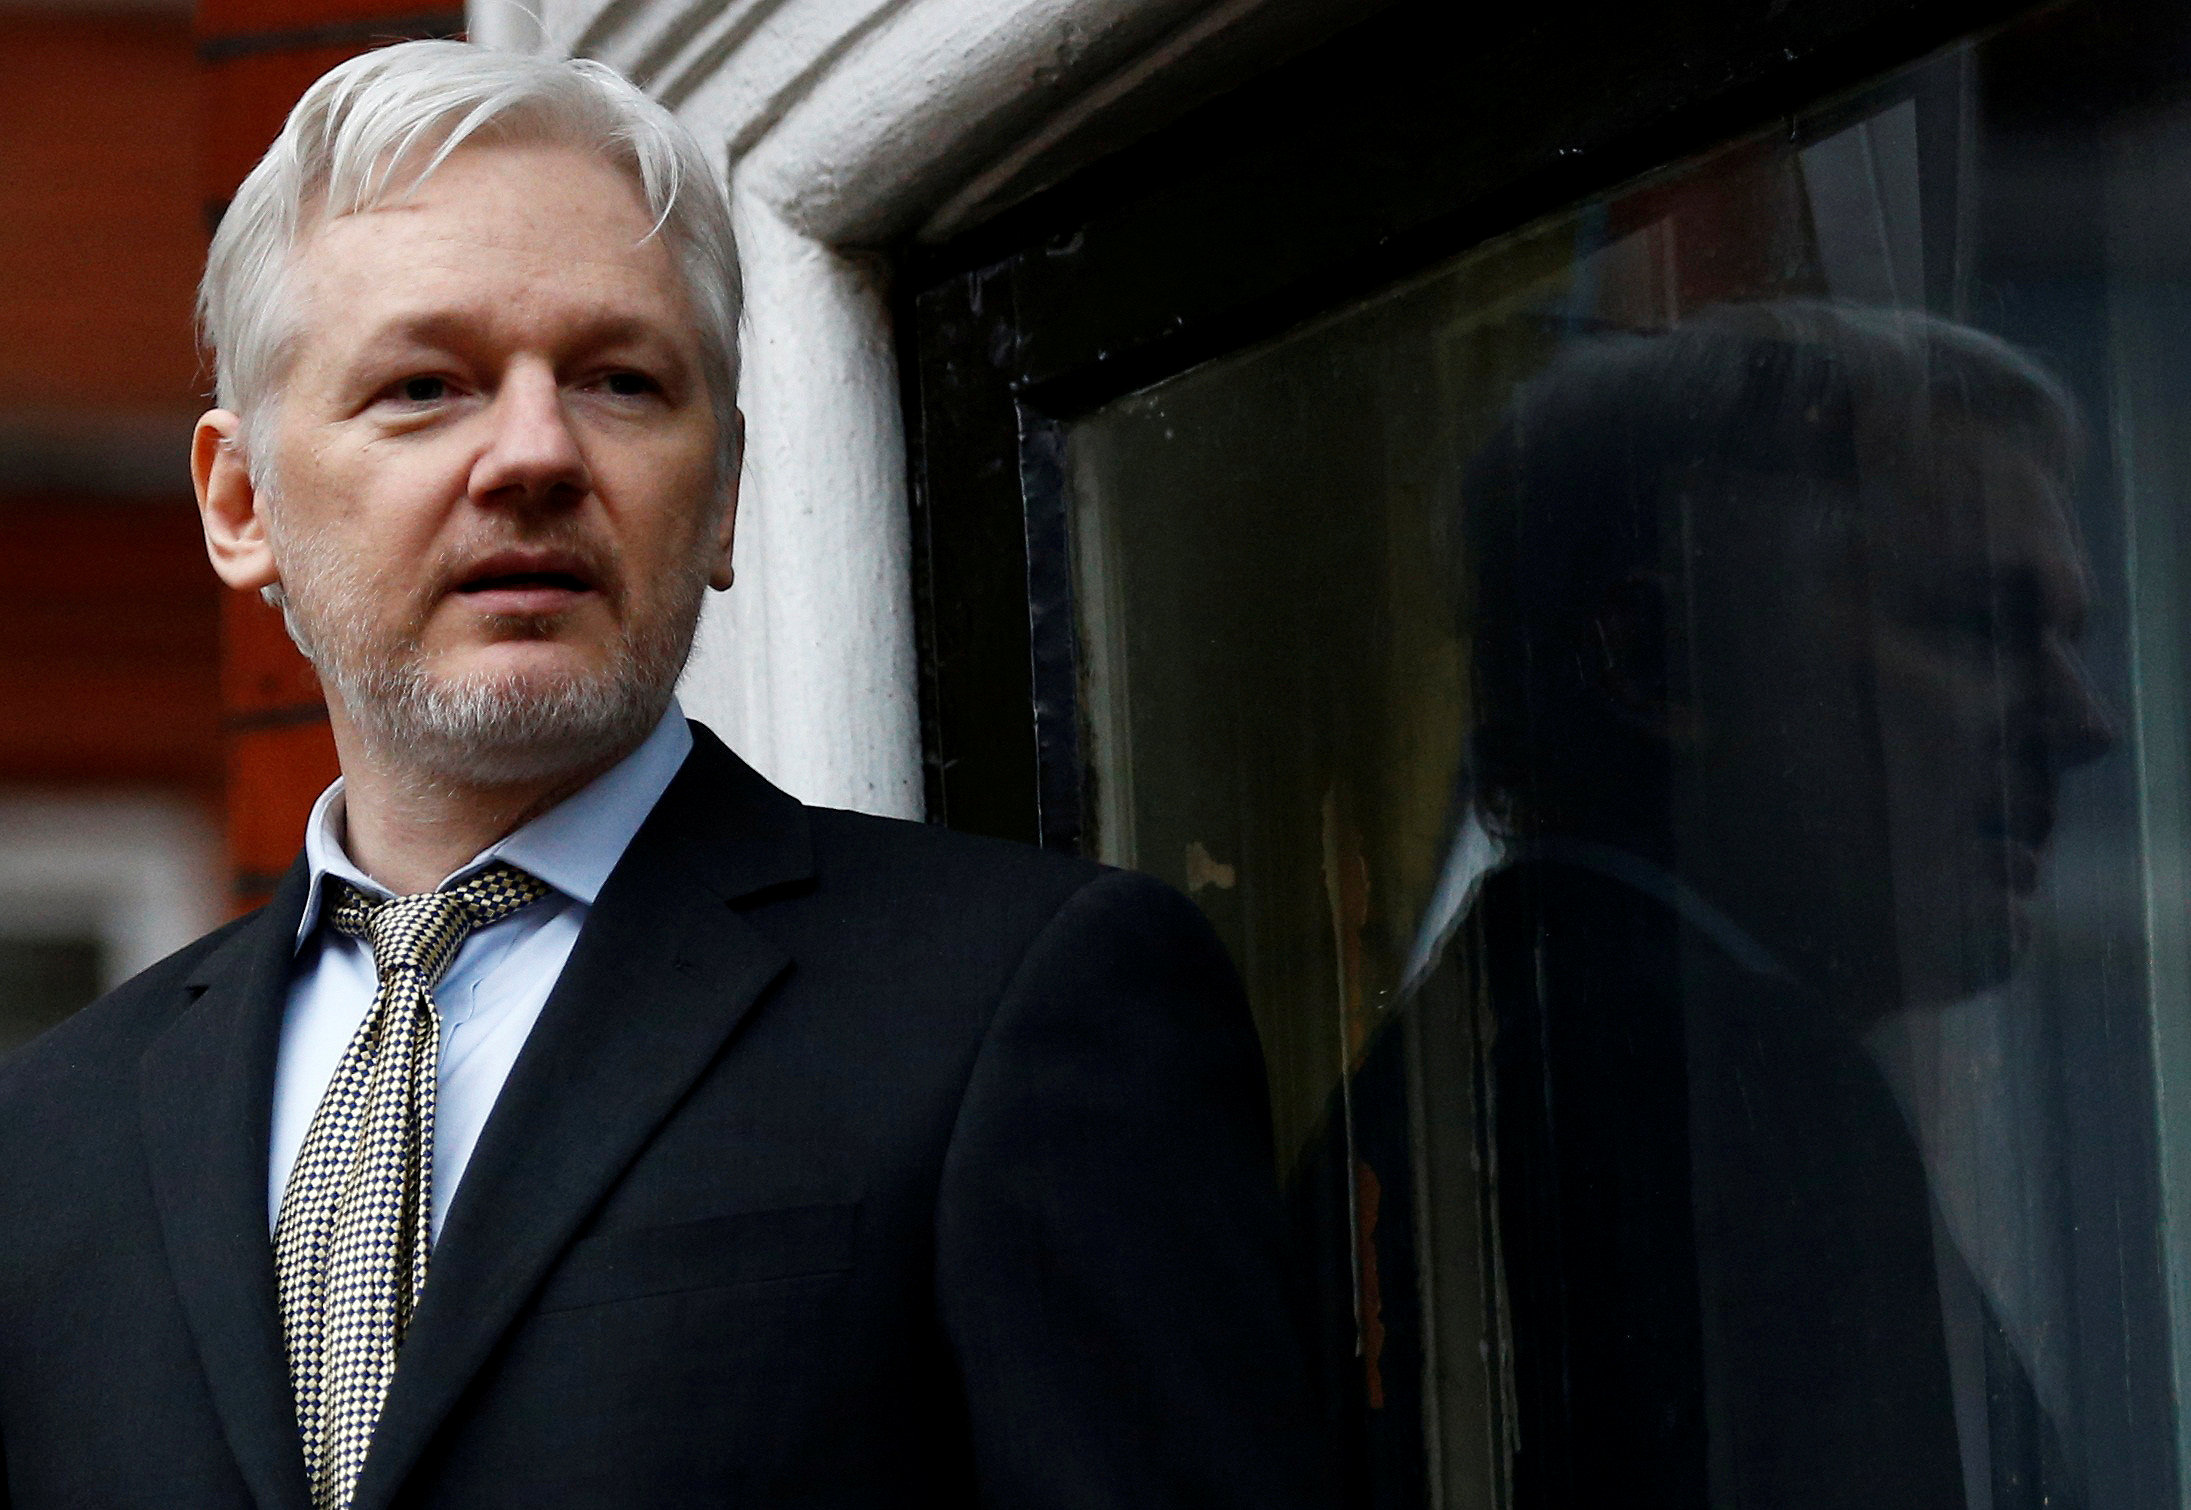 Justicia de Ecuador rechaza demanda de Assange contra normas para su asilo